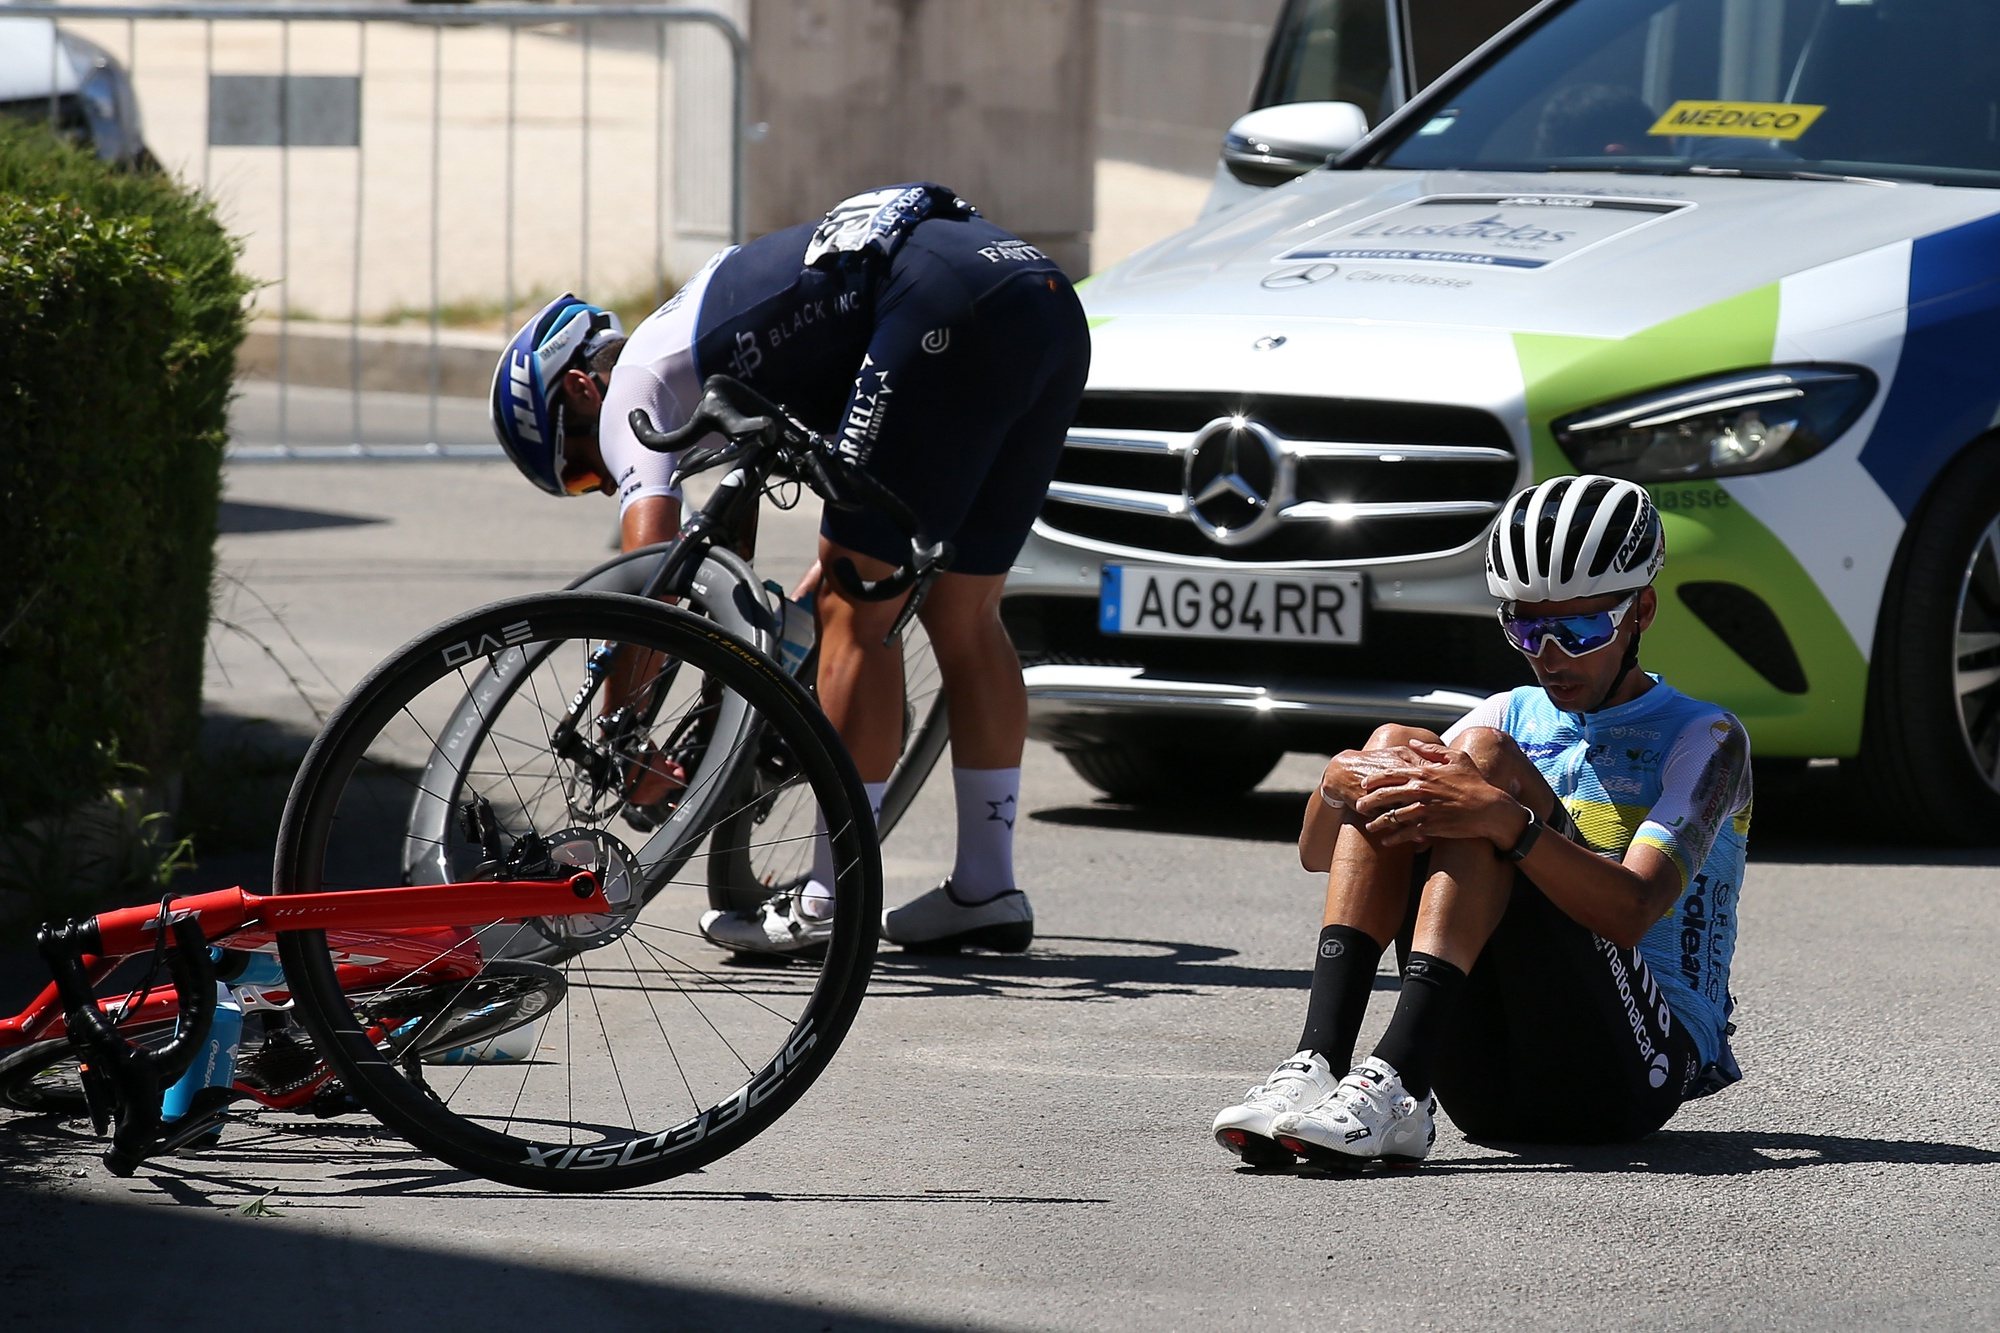 O ciclista da Atum General - Tavira, David Livramento (D), após uma queda durante a 1ª etapa da 82ª Volta a Portugal em Bicicleta, disputada hoje entre Torres Vedras e Setúbal, com a distância de 175,8 Km, Setúbal, 05 de agosto de 2021. NUNO VEIGA/LUSA